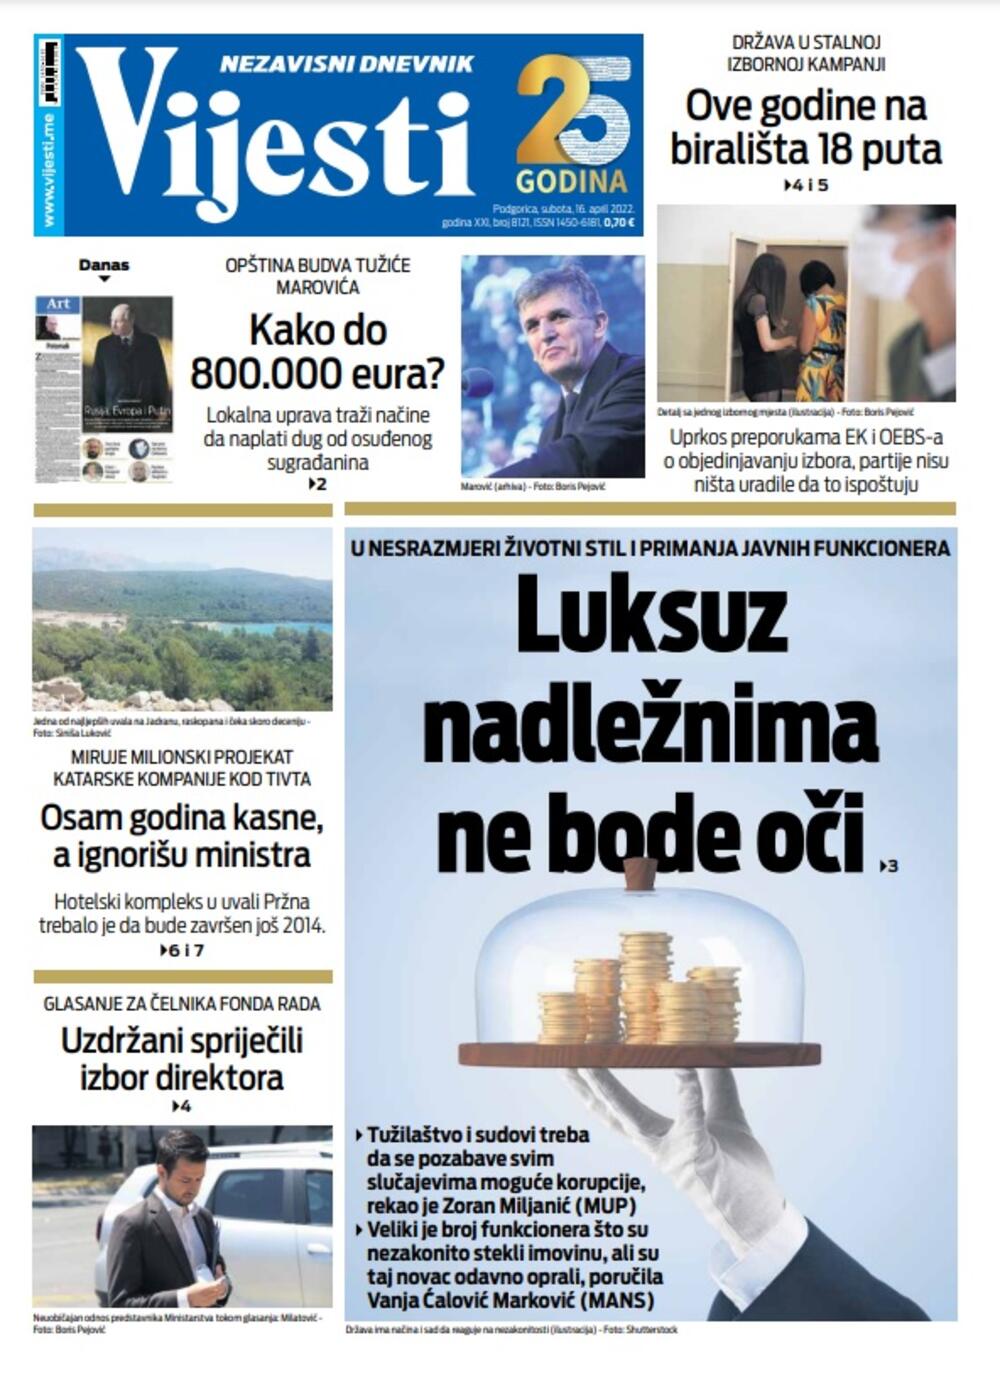 Naslovna strana "Vijesti" za 16. april, Foto: Vijesti